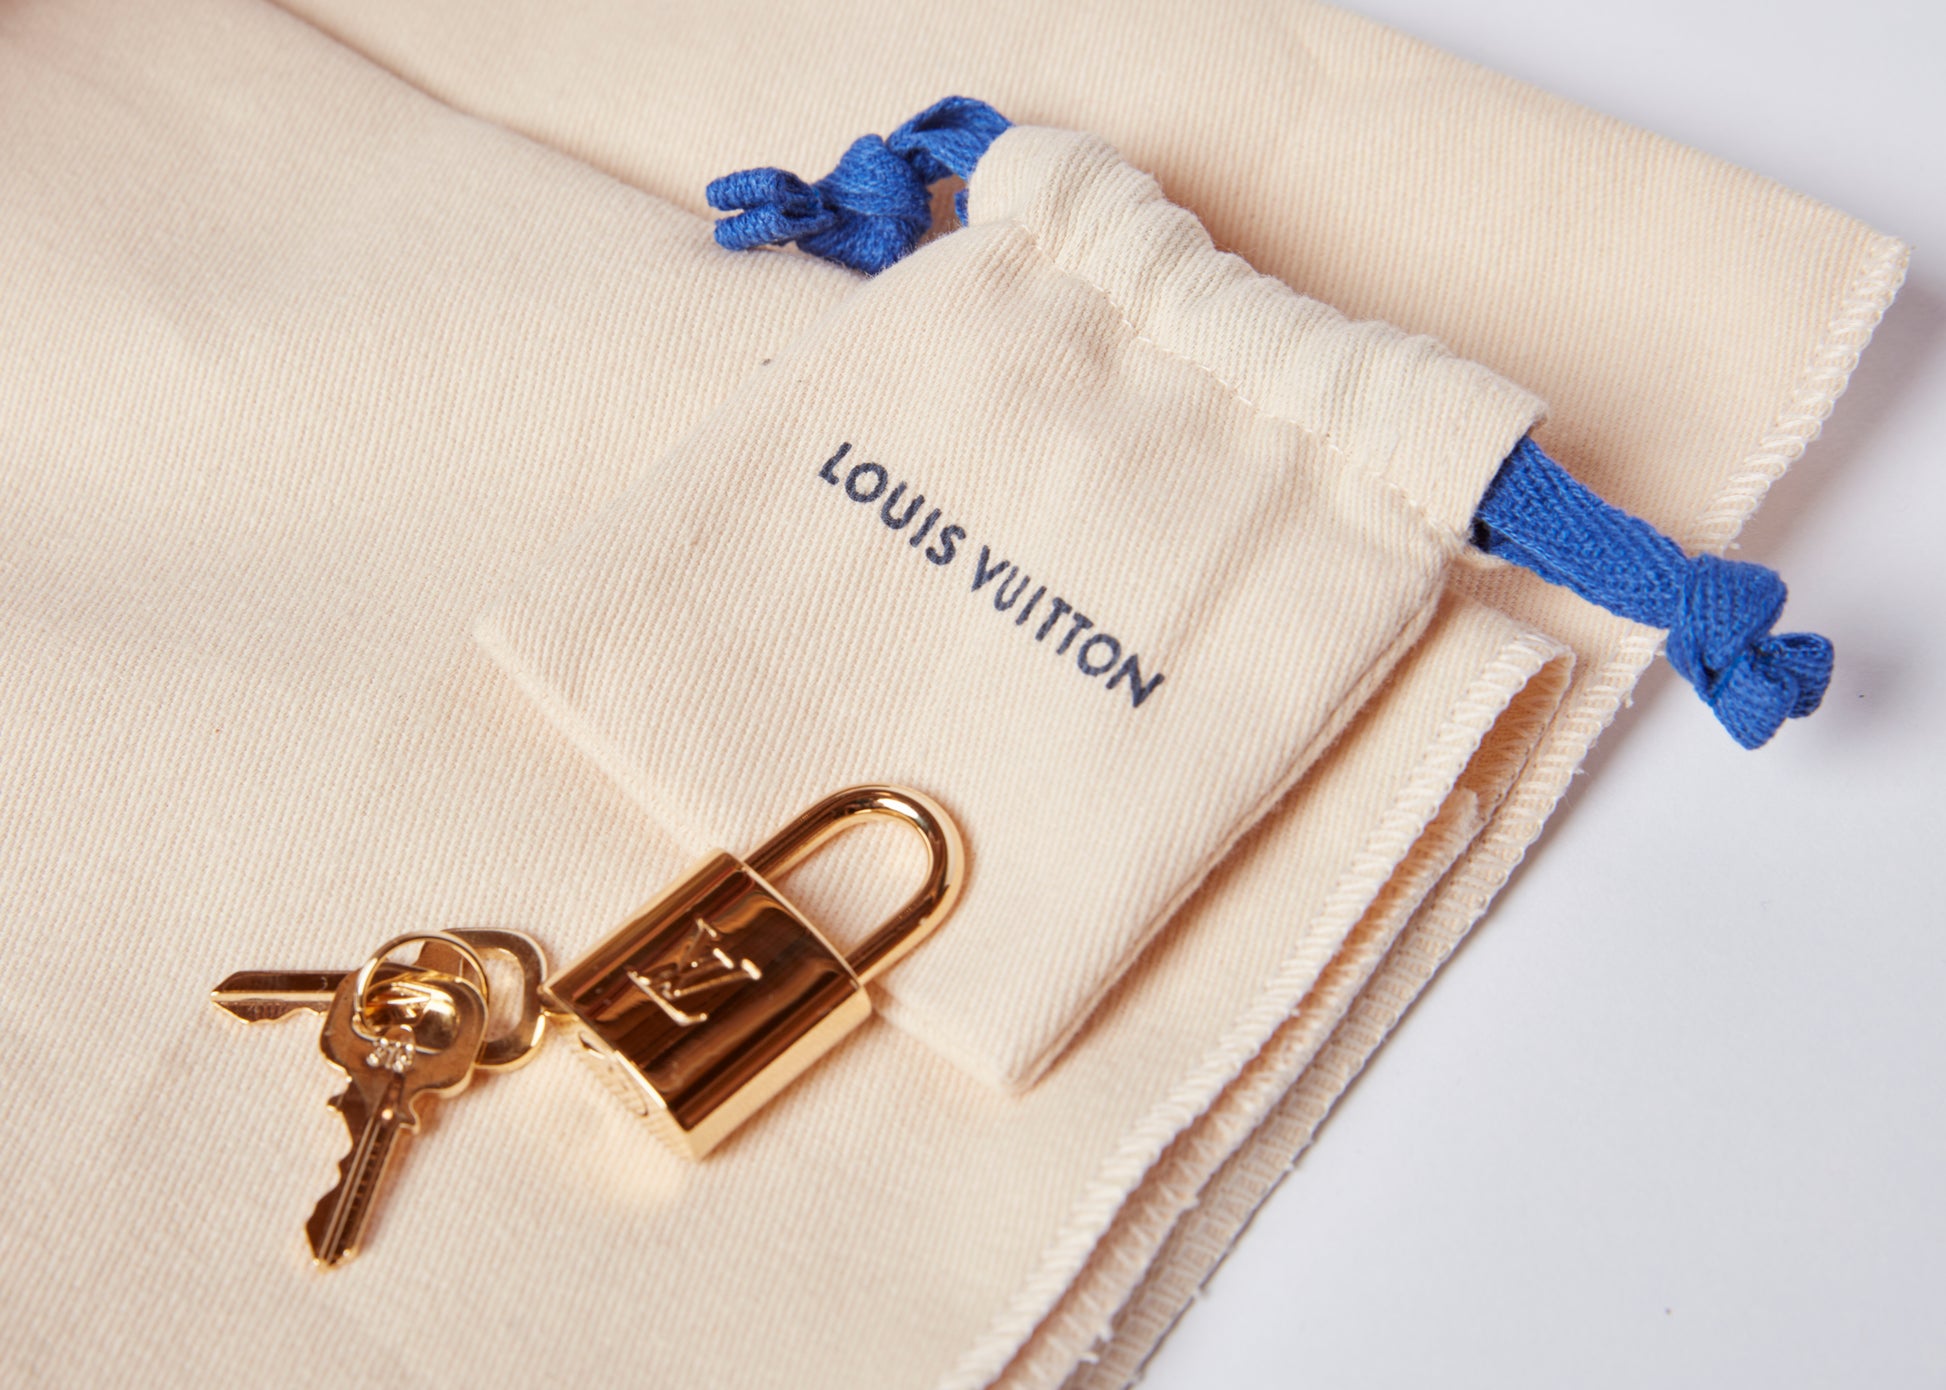 Louis Vuitton Zipper Pull Set of 10